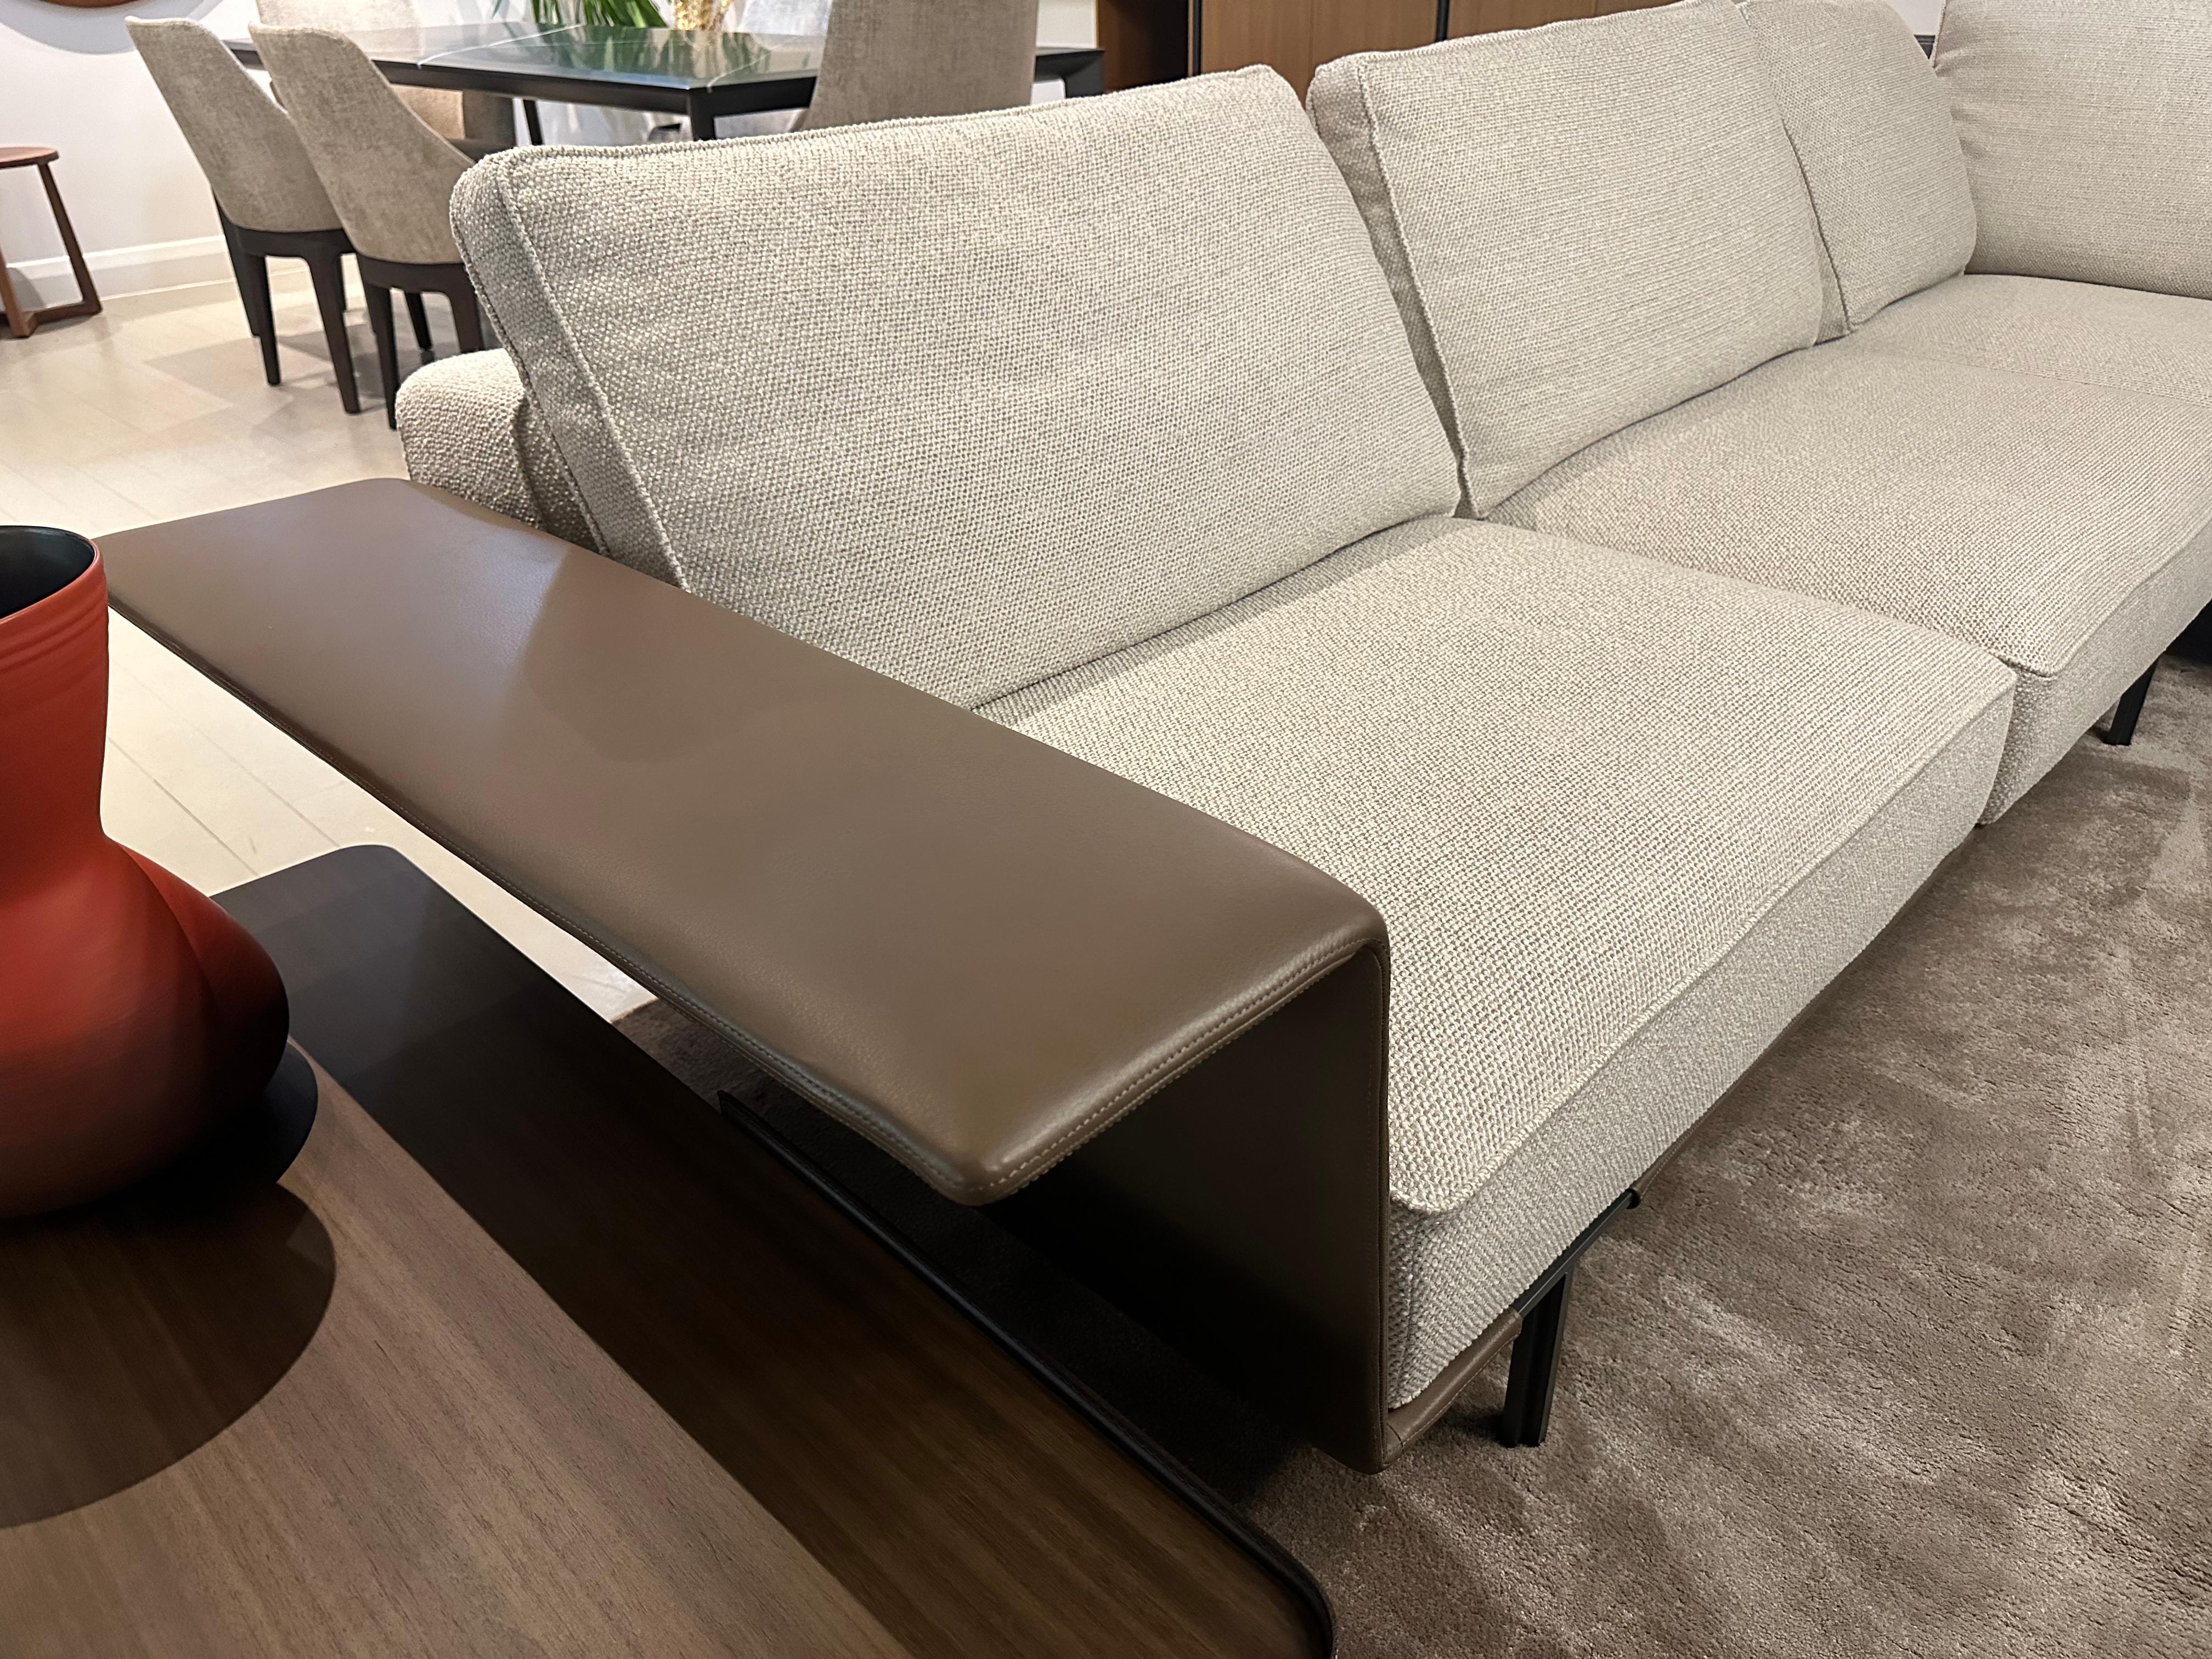 Das modulare Sofa Gregor von Molteni&C kann in einer Vielzahl von Zusammenstellungen oder als Einzelmöbel verwendet werden, vom typischen 2- oder 3-Sitzer-Sofa bis hin zum eleganten Daybed. Gregor ist eine Sofakollektion, die mit geringen